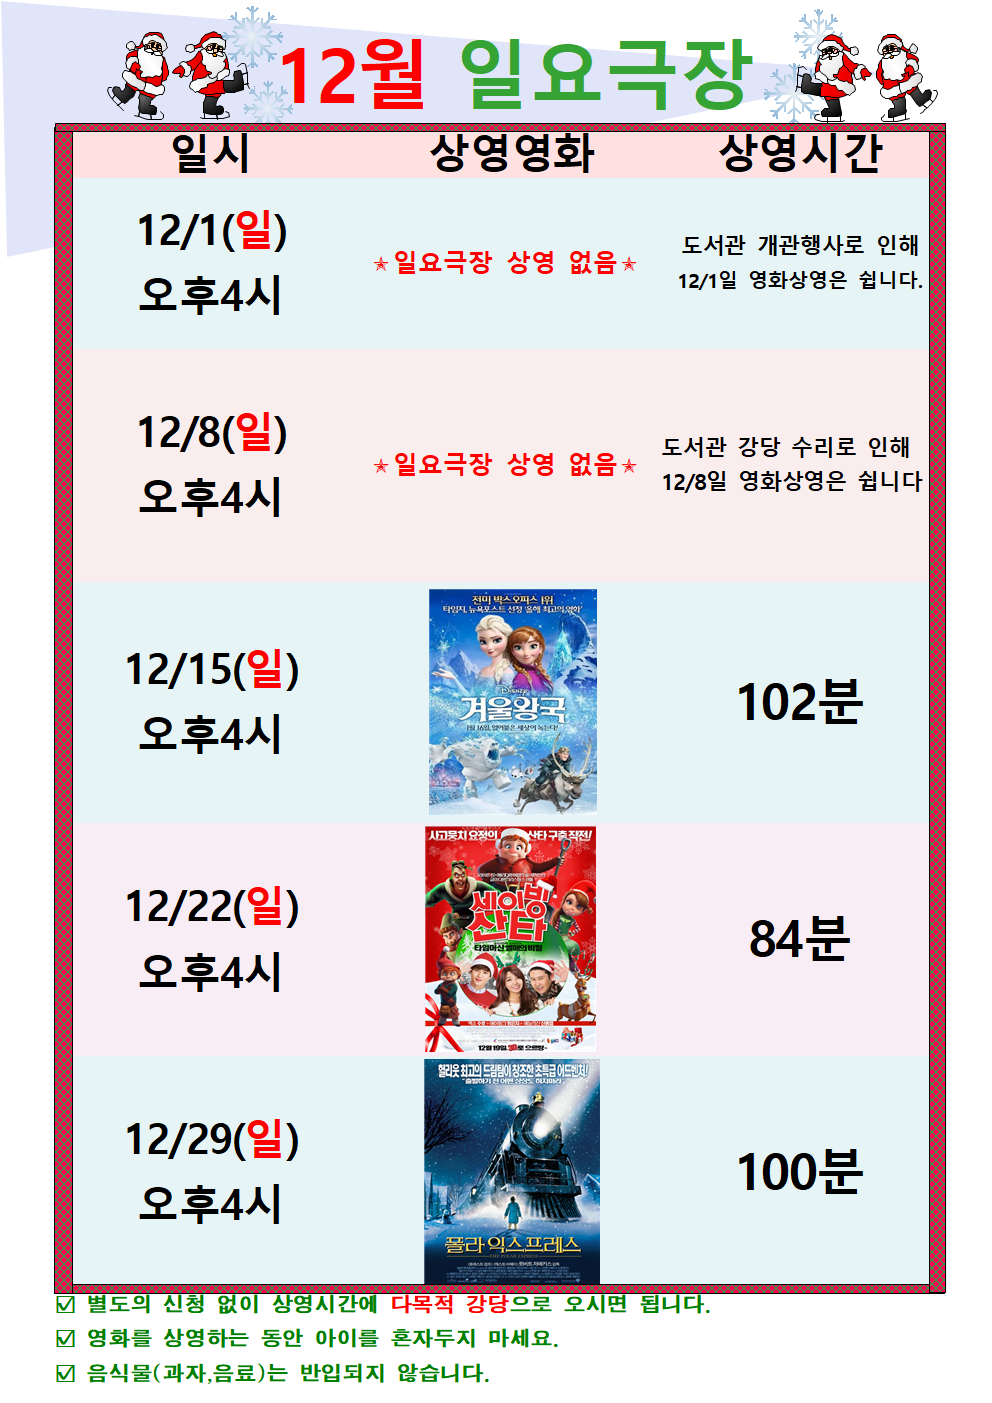 12월 일요극장 상영시간 (변경) 